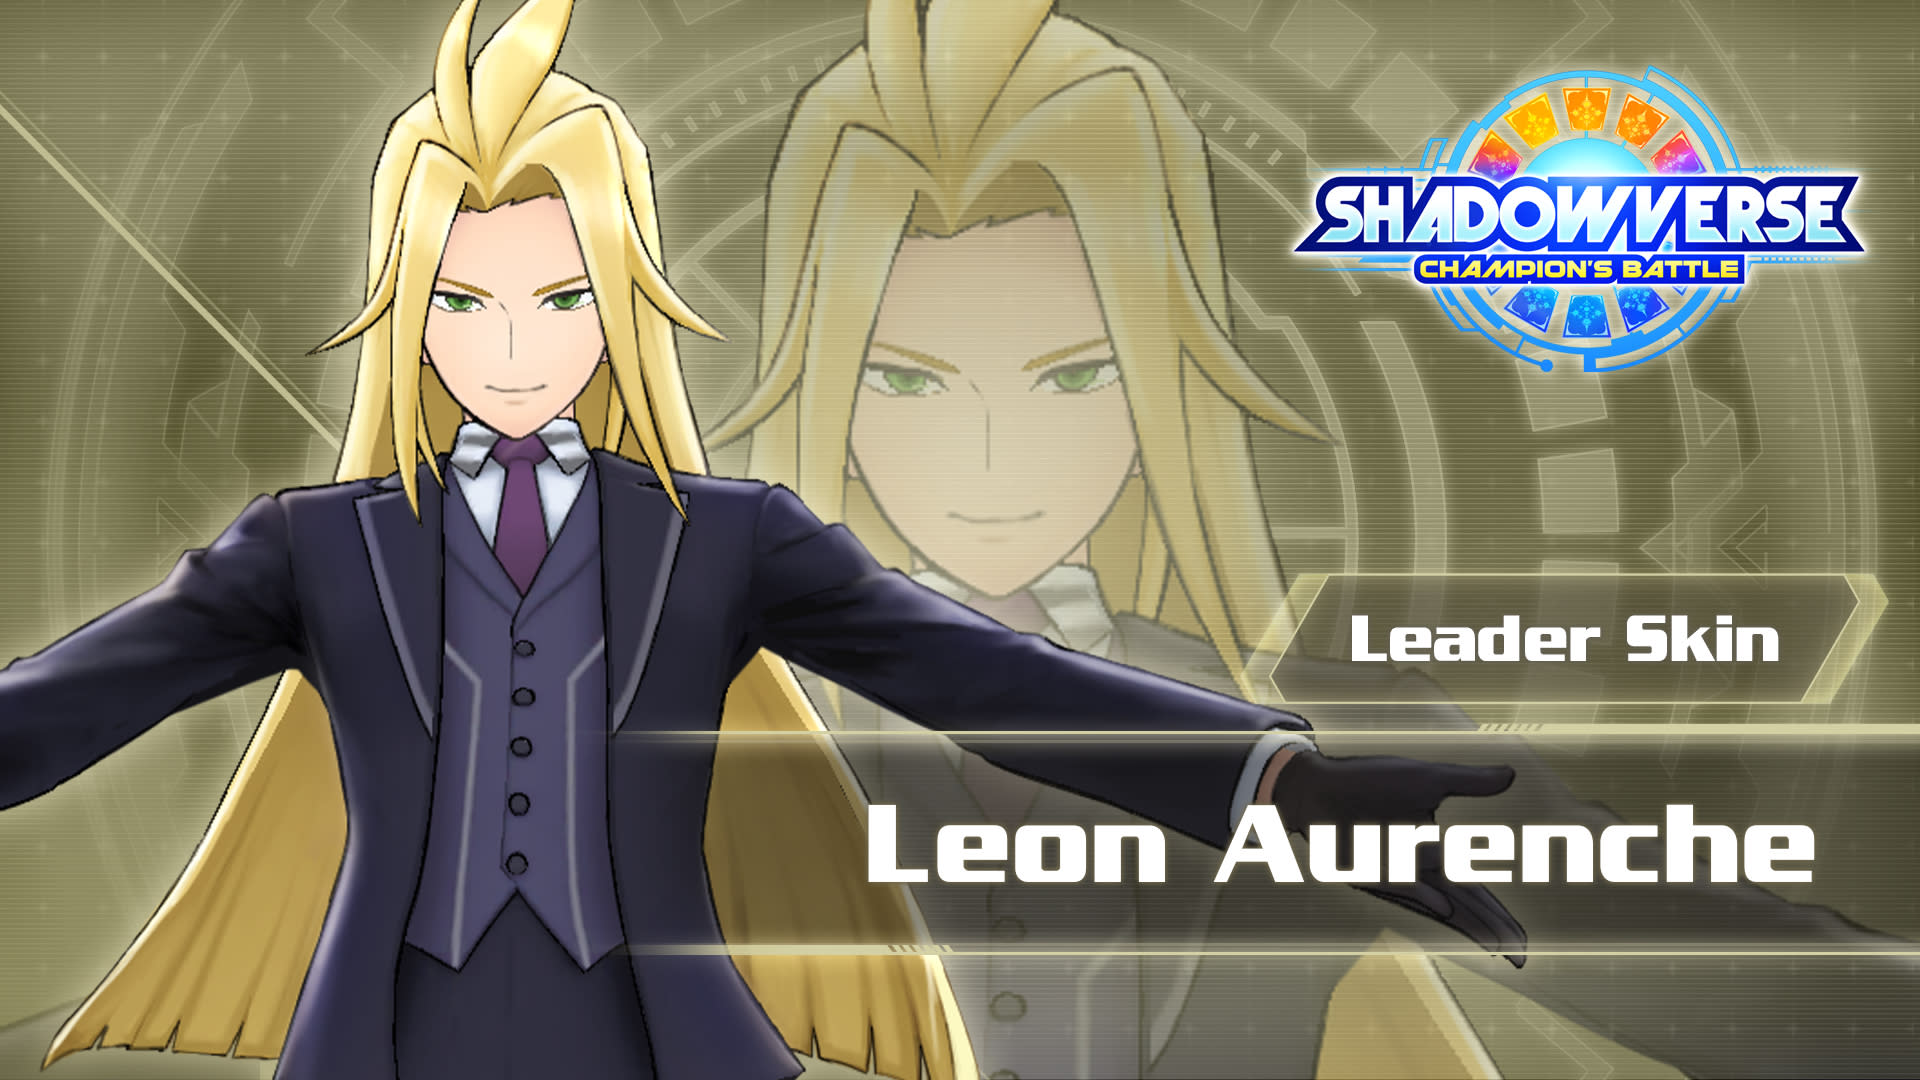 Leader Skin: "Leon Aurenche"